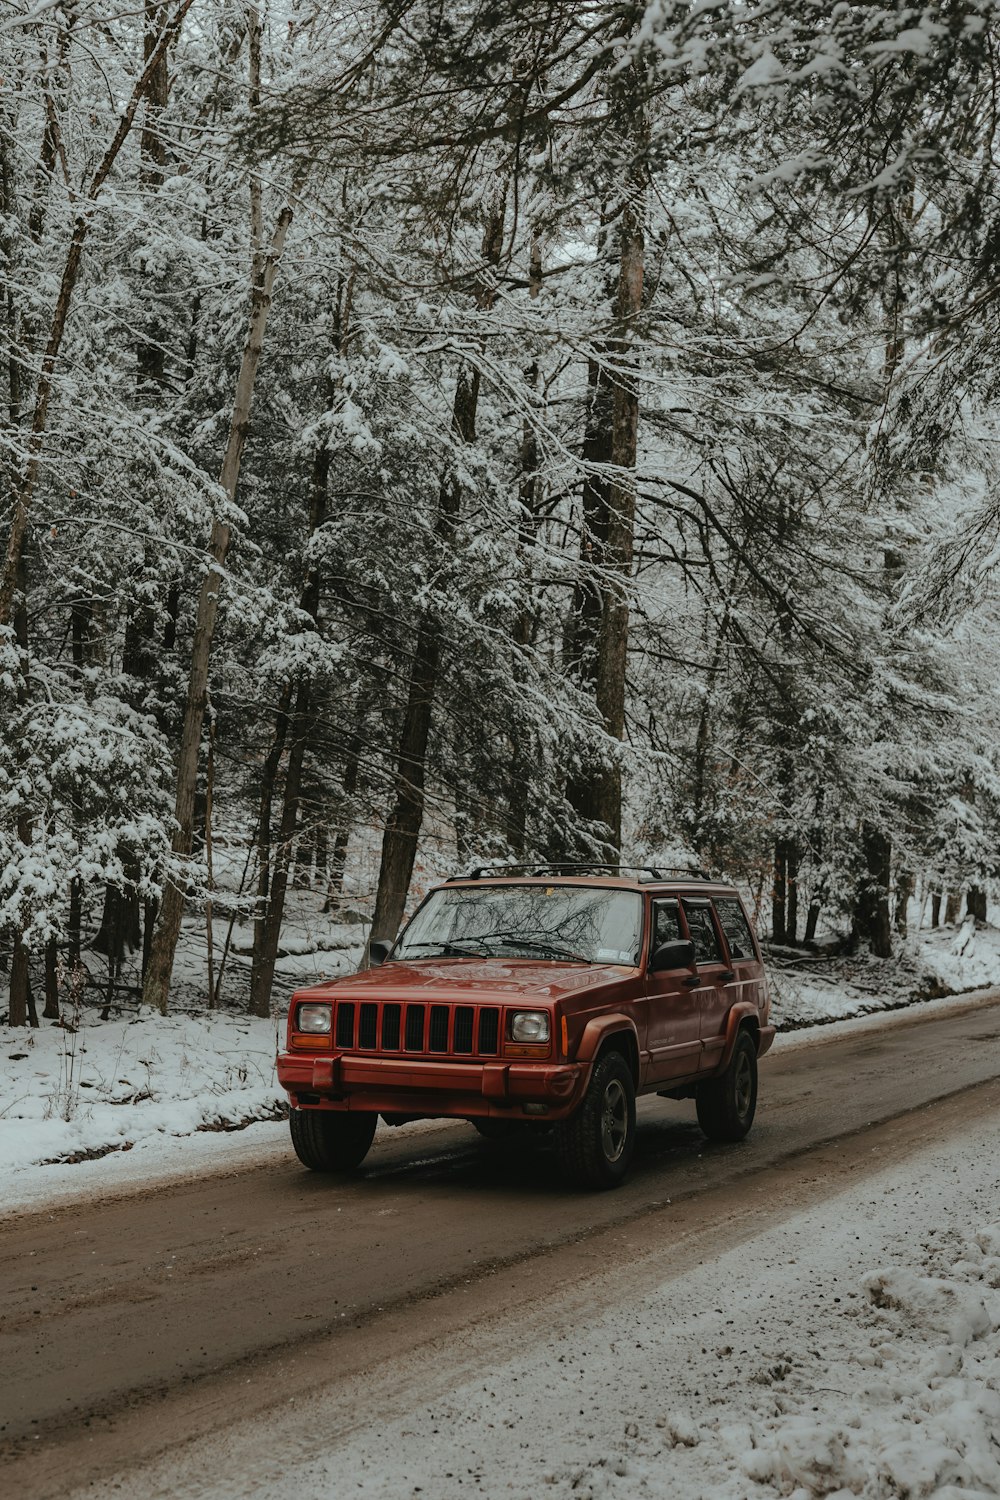 Une jeep rouge roulant sur une route enneigée